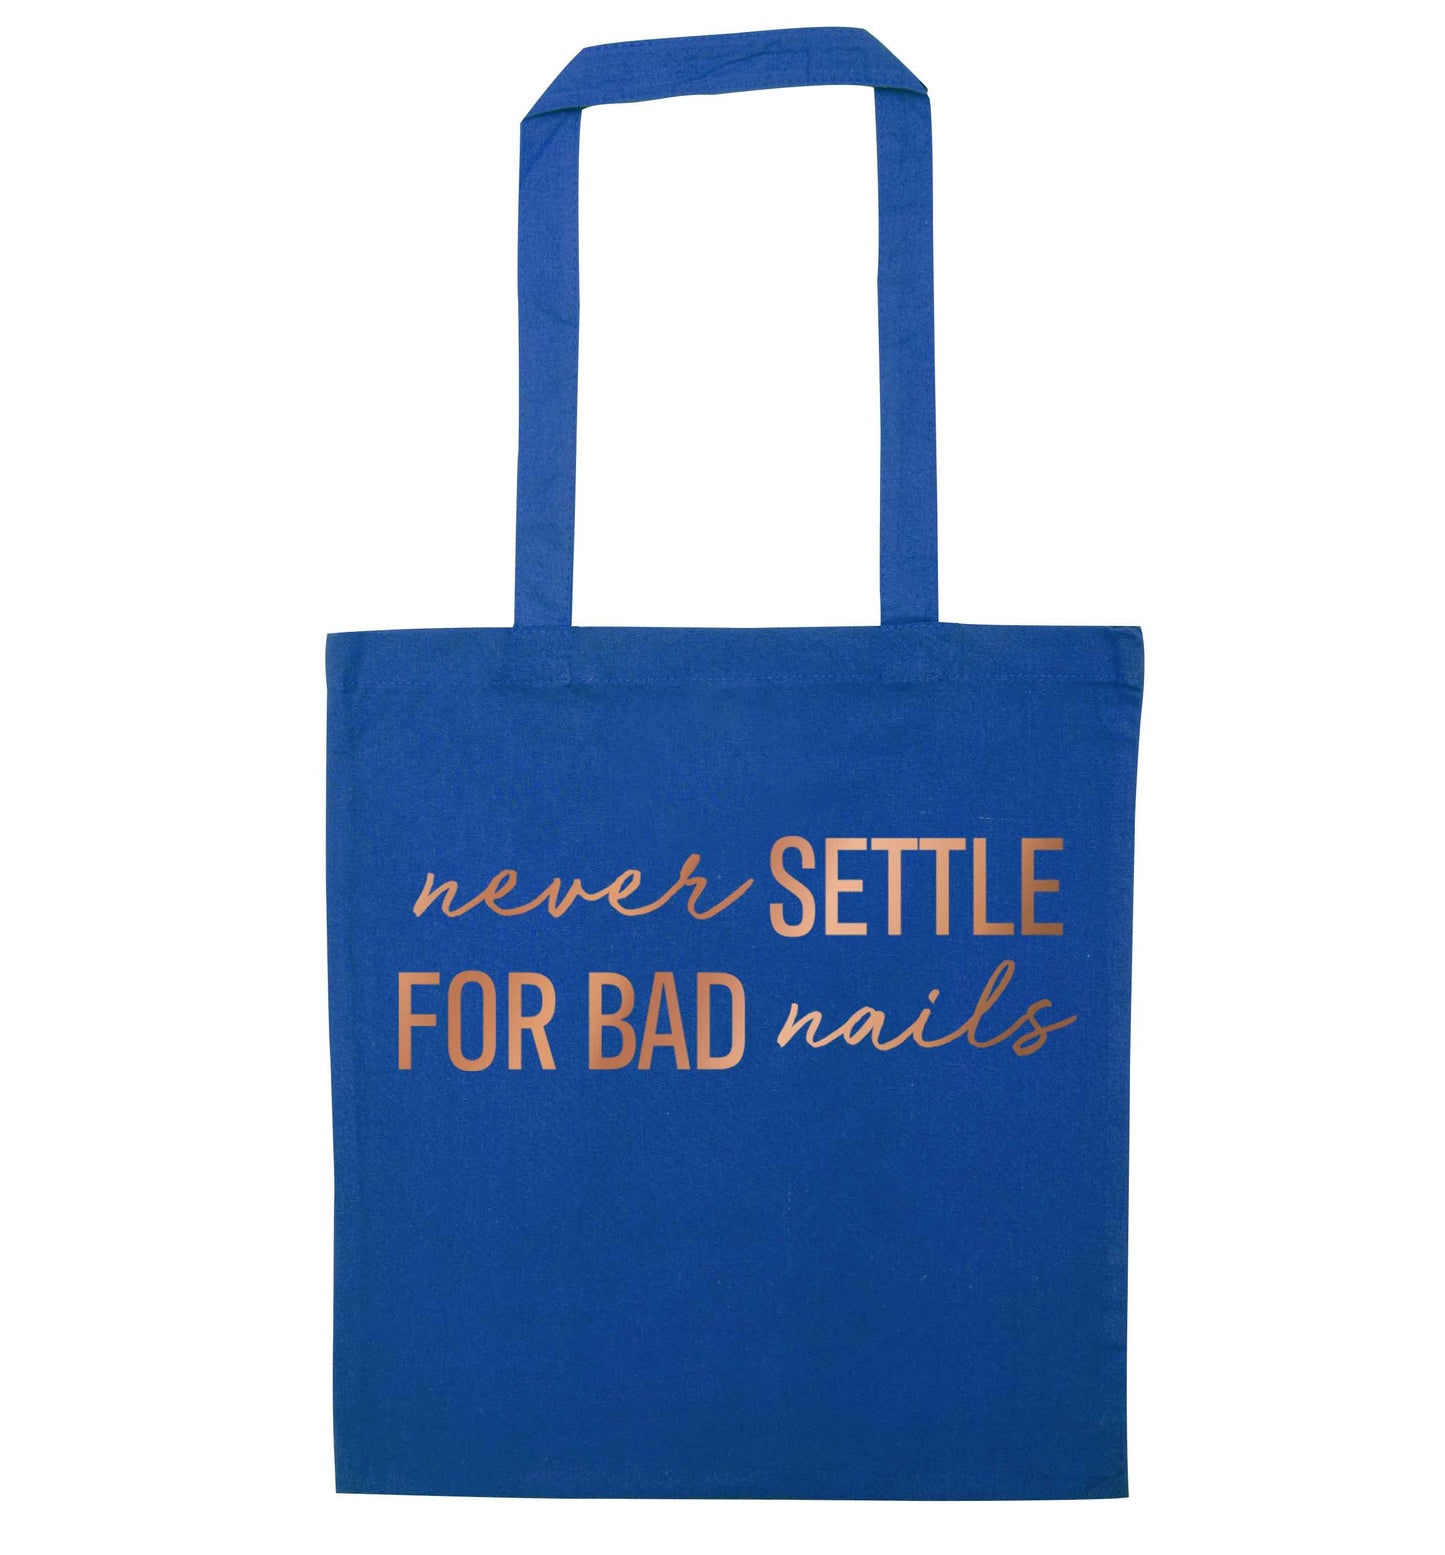 Never settle for bad nails - rose gold blue tote bag